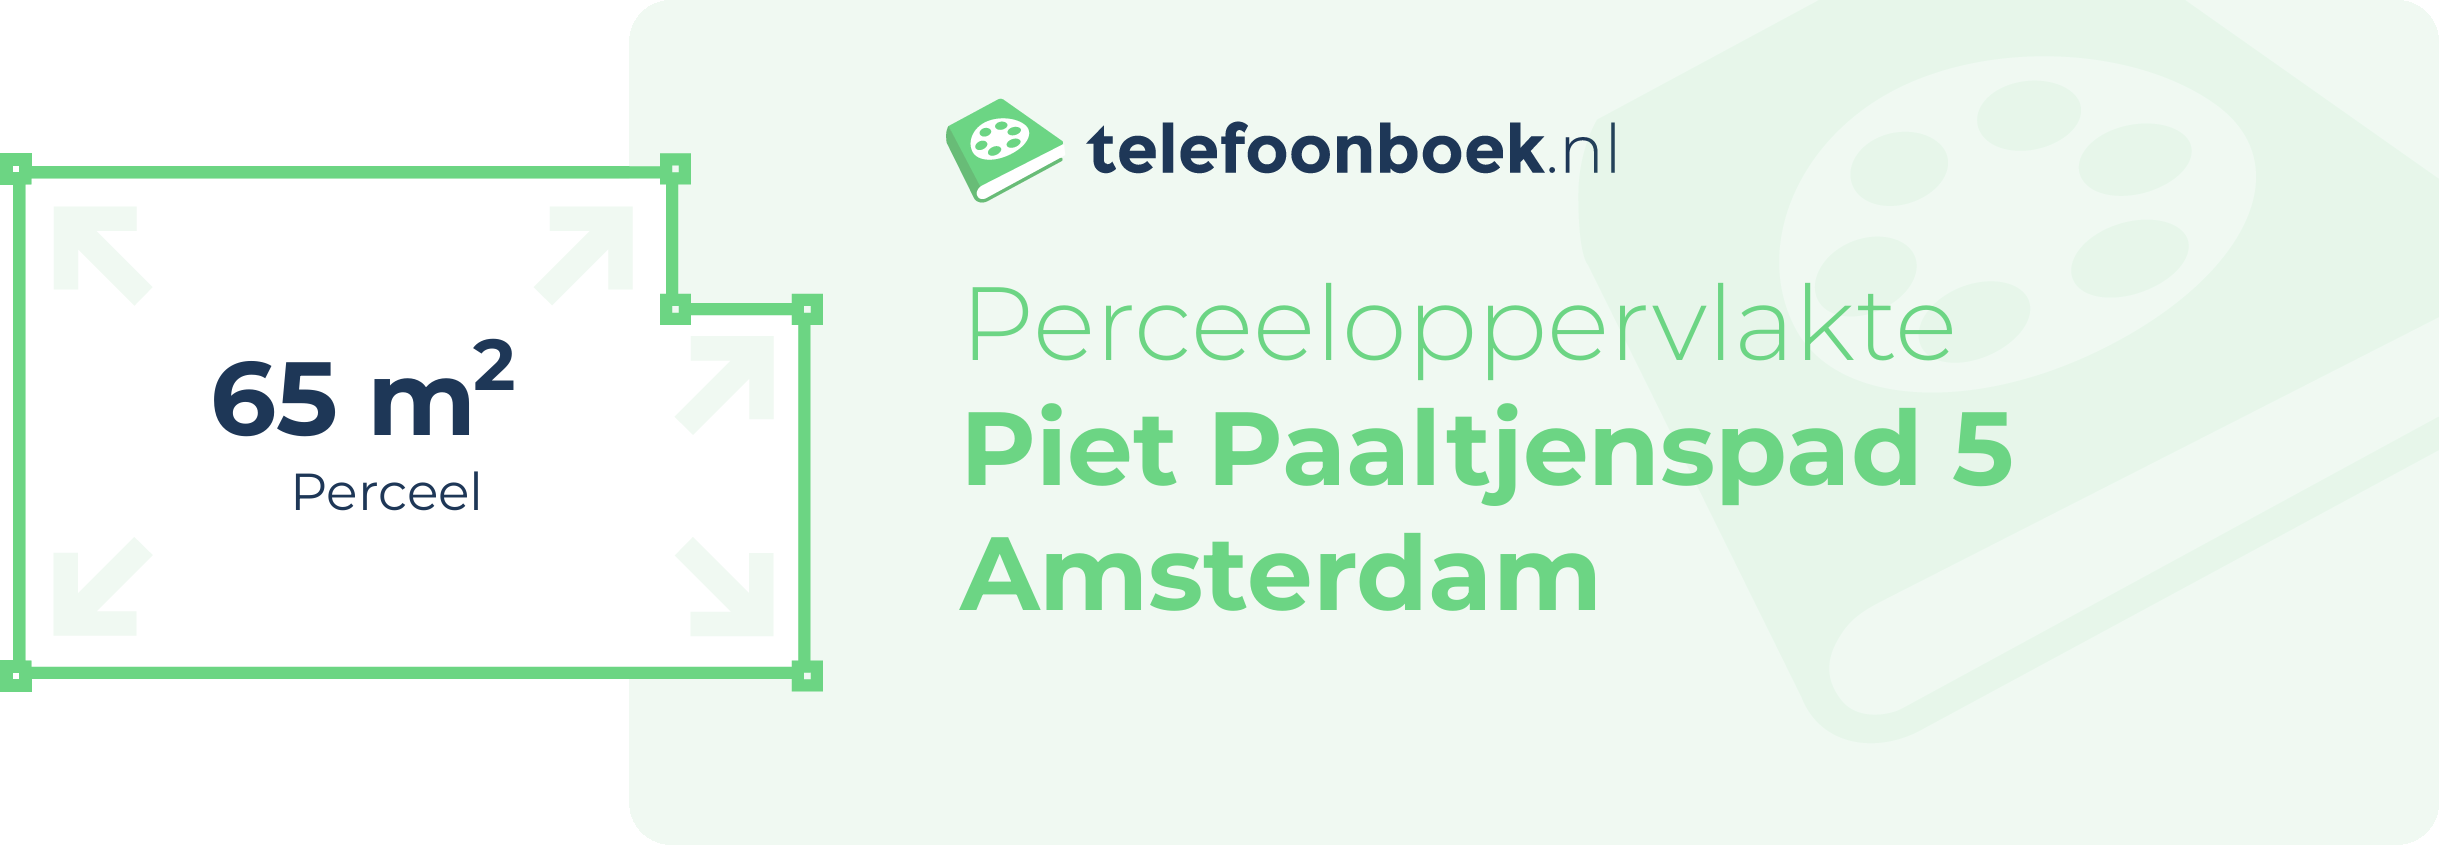 Perceeloppervlakte Piet Paaltjenspad 5 Amsterdam